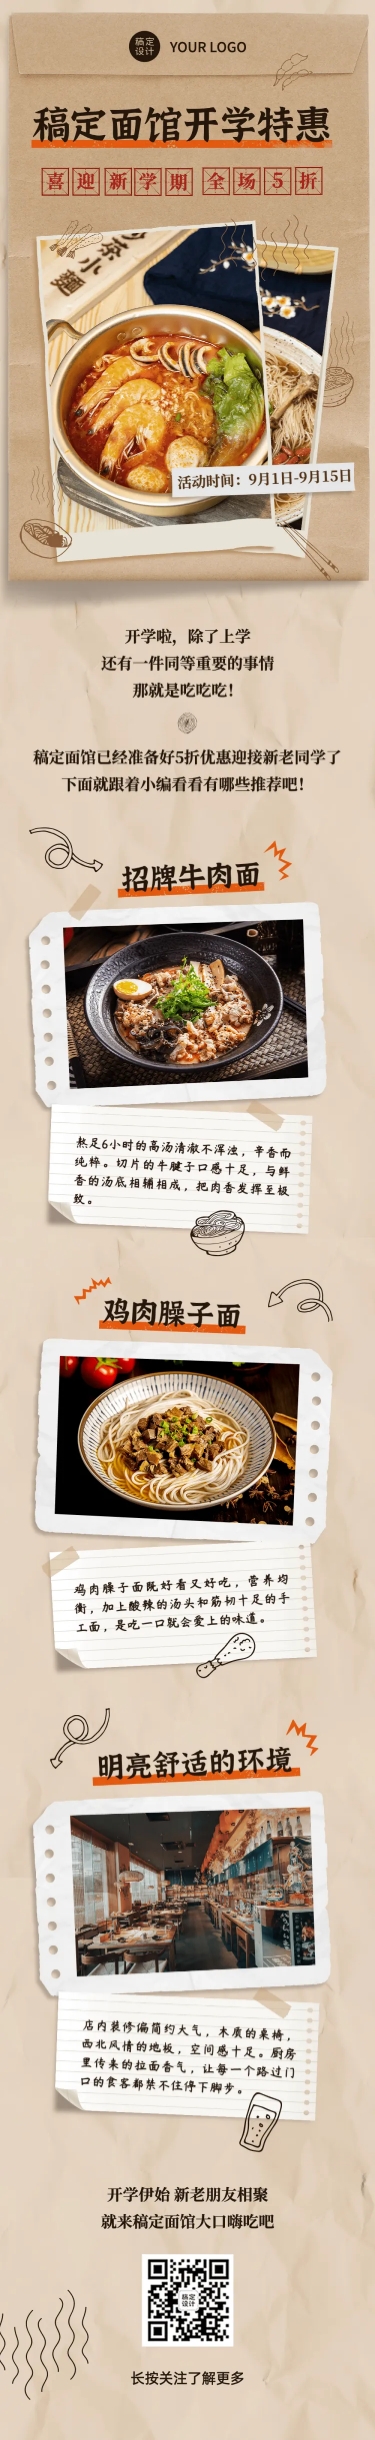 中餐正餐新品促销实景文章长图